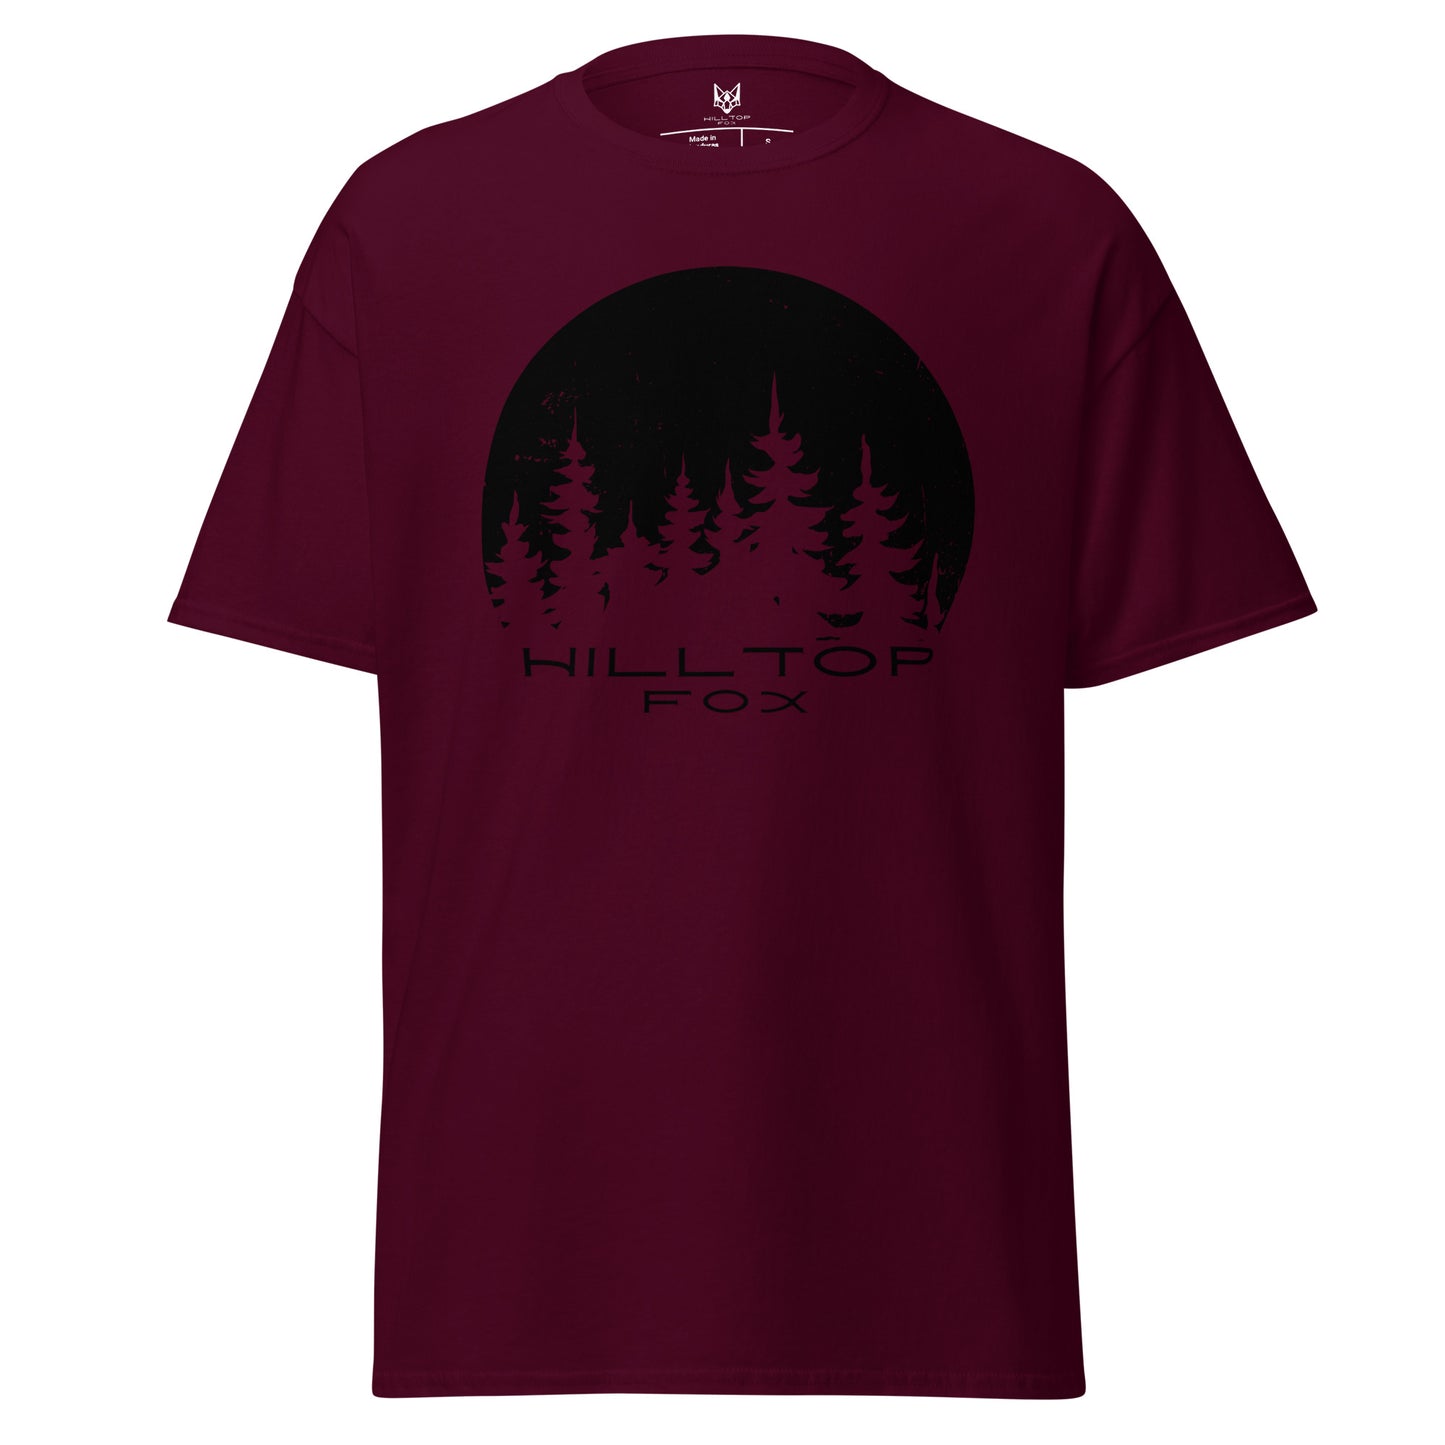 T-shirt Hilltop Fox « Les Pins »